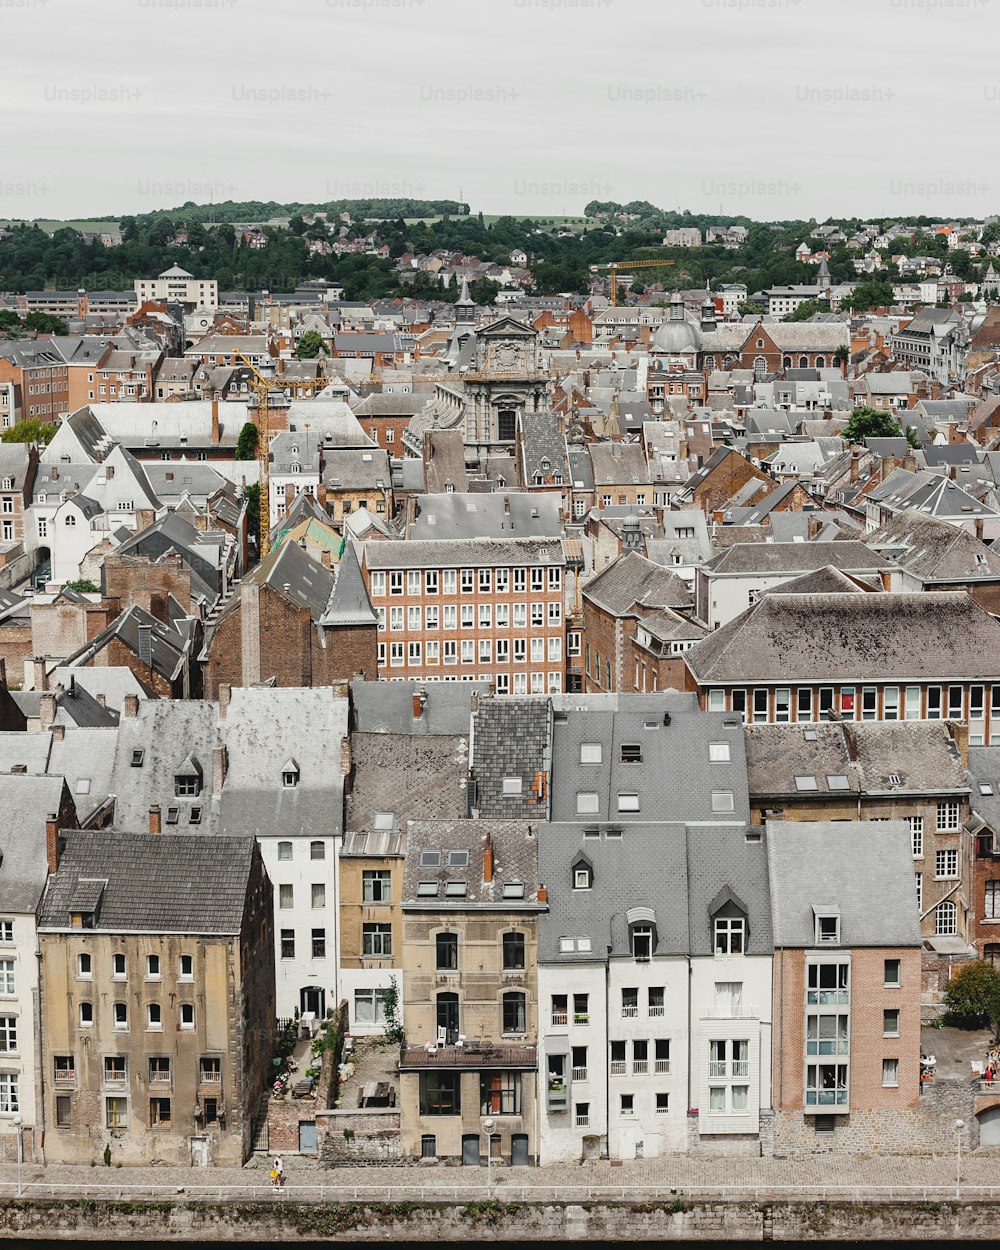 Una vista de una ciudad desde un punto de vista elevado